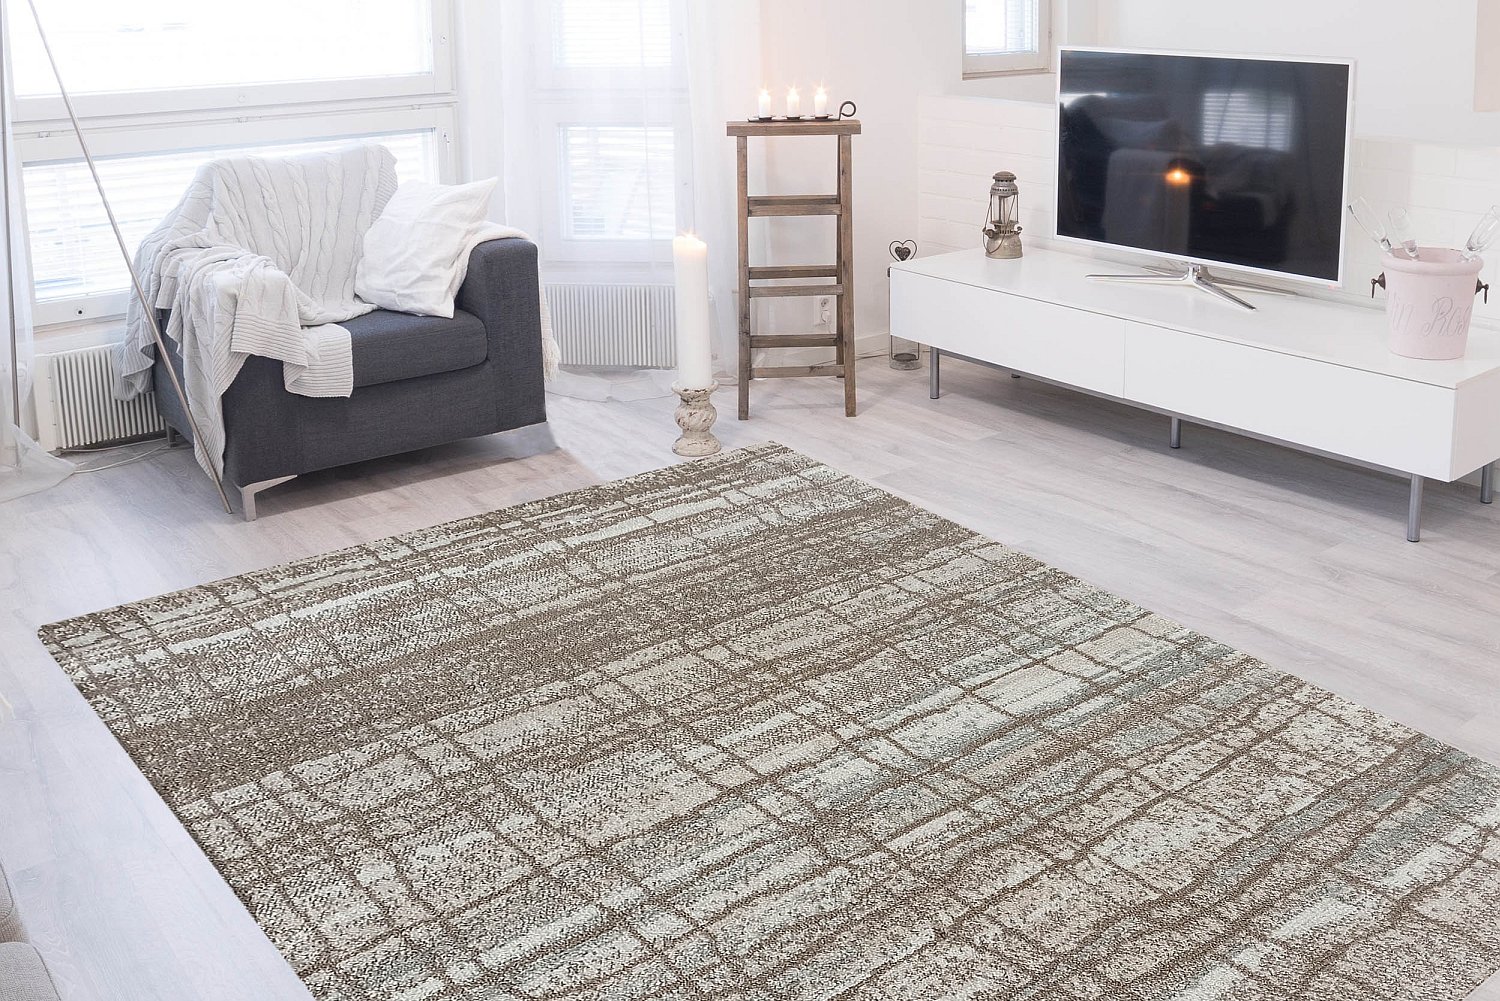 Wybór idealnego dywanu do salonu – na co zwrócić uwagę?